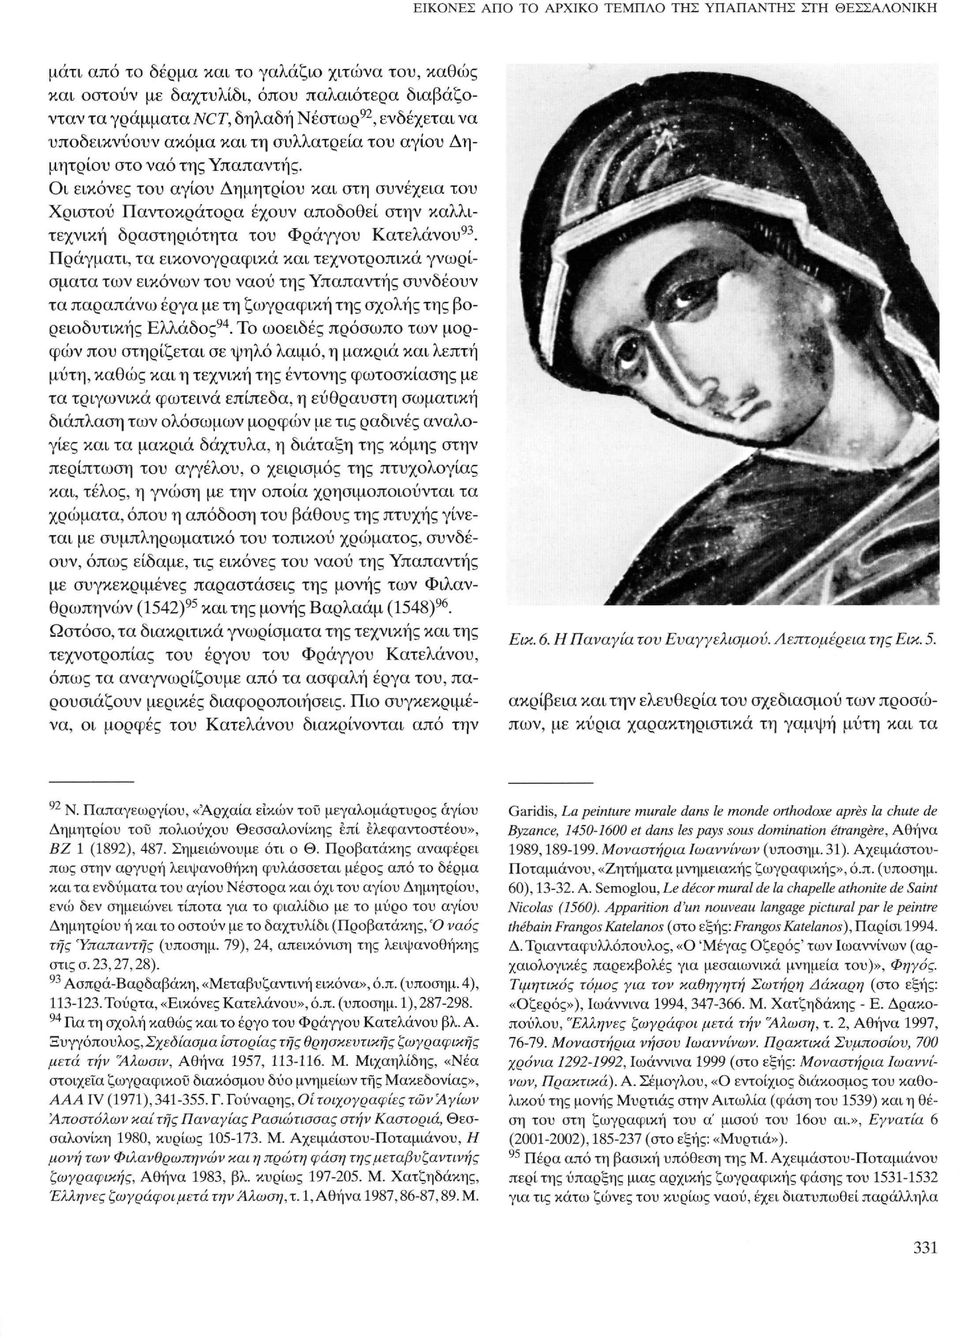 Οι εικόνες του αγίου Δημητρίου και στη συνέχεια του Χριστού Παντοκράτορα έχουν αποδοθεί στην καλλιτεχνική δραστηριότητα του Φράγγου Κατελάνου 93.